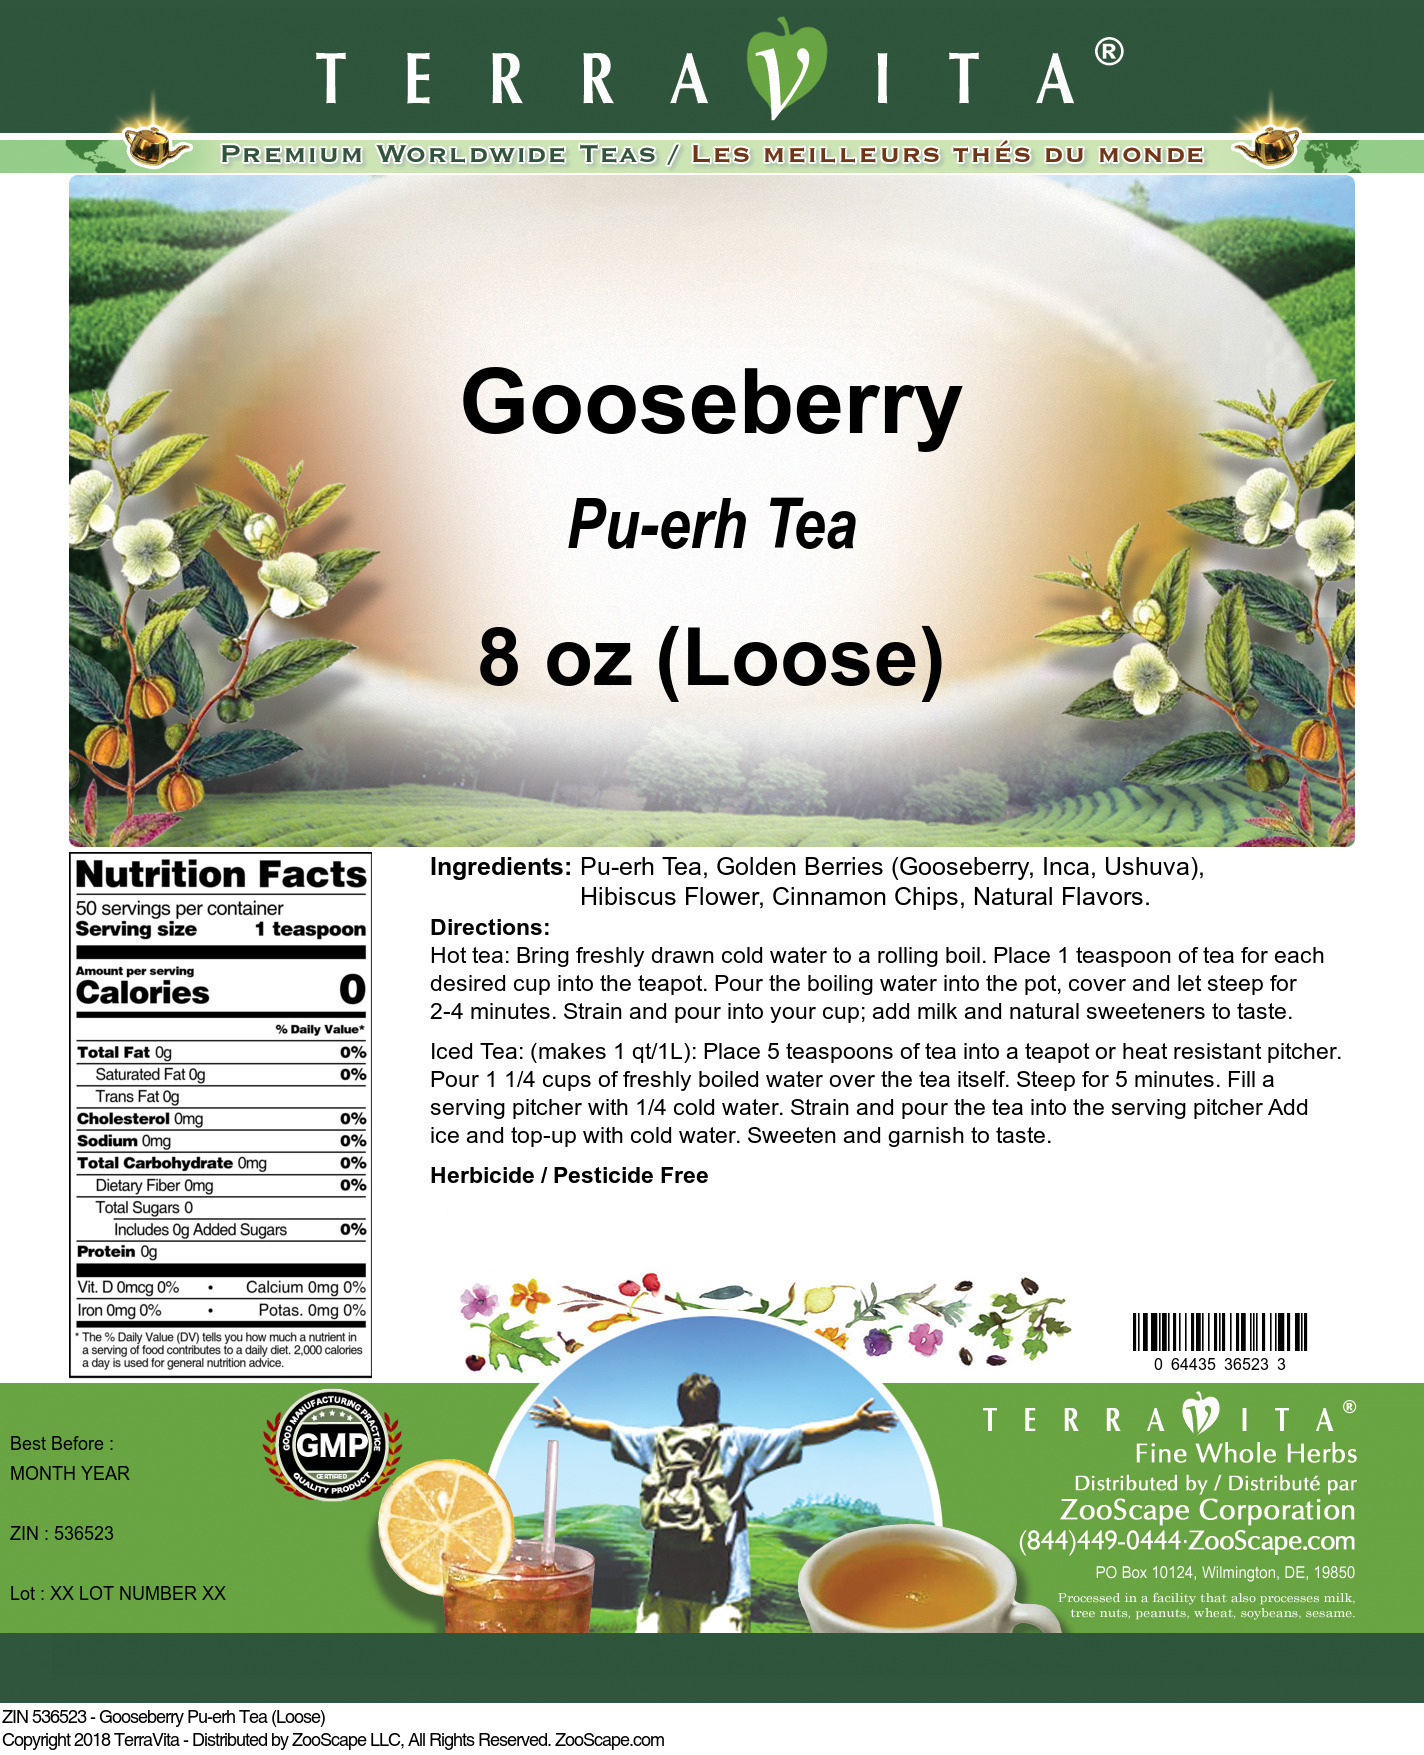 Gooseberry Pu-erh Tea (Loose) - Label